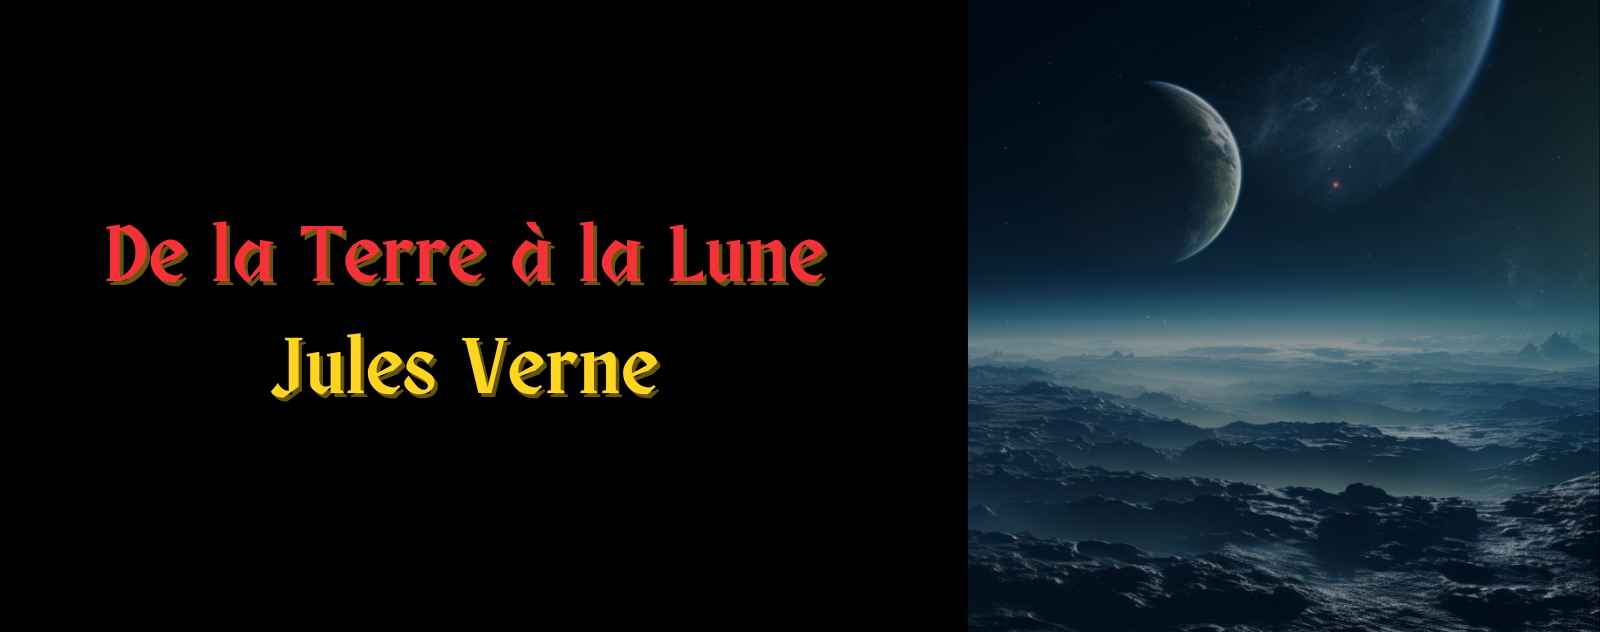 De la Terre à la Lune par Jules Verne